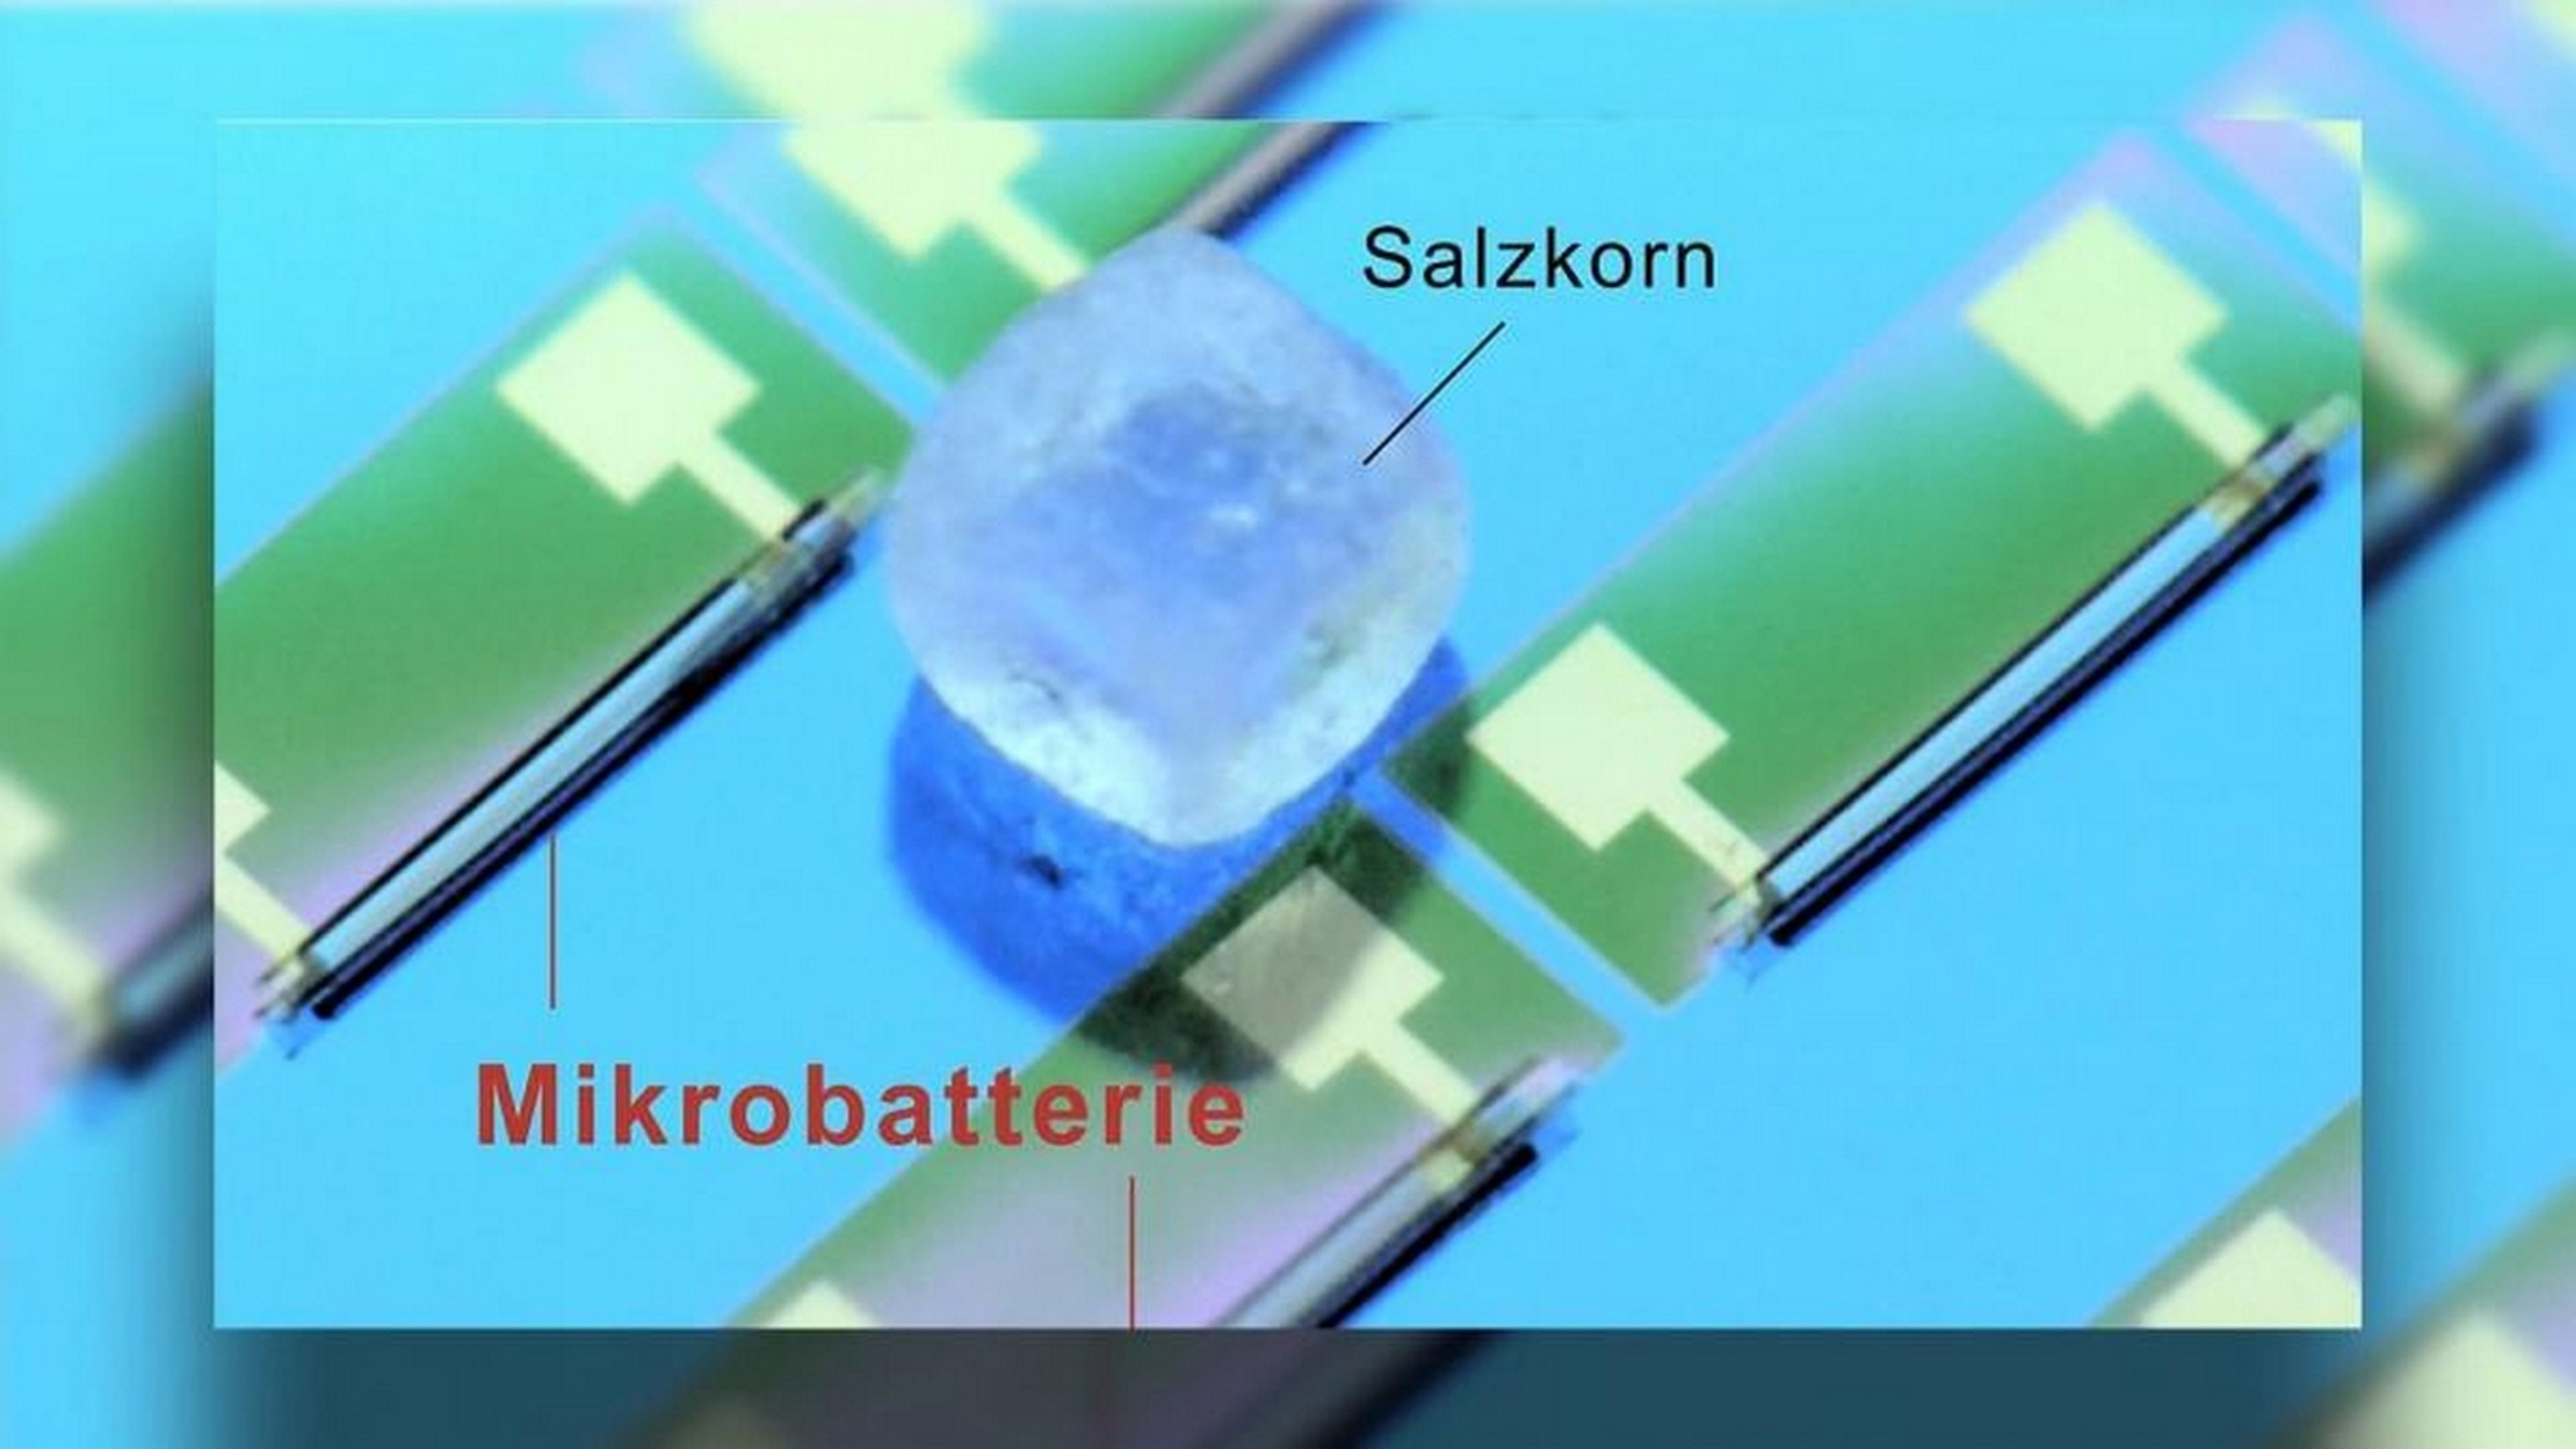 La batería más pequeña del mundo el tamaño de un grano de sal, y está pensada para metértela en el cuerpo | Computer Hoy